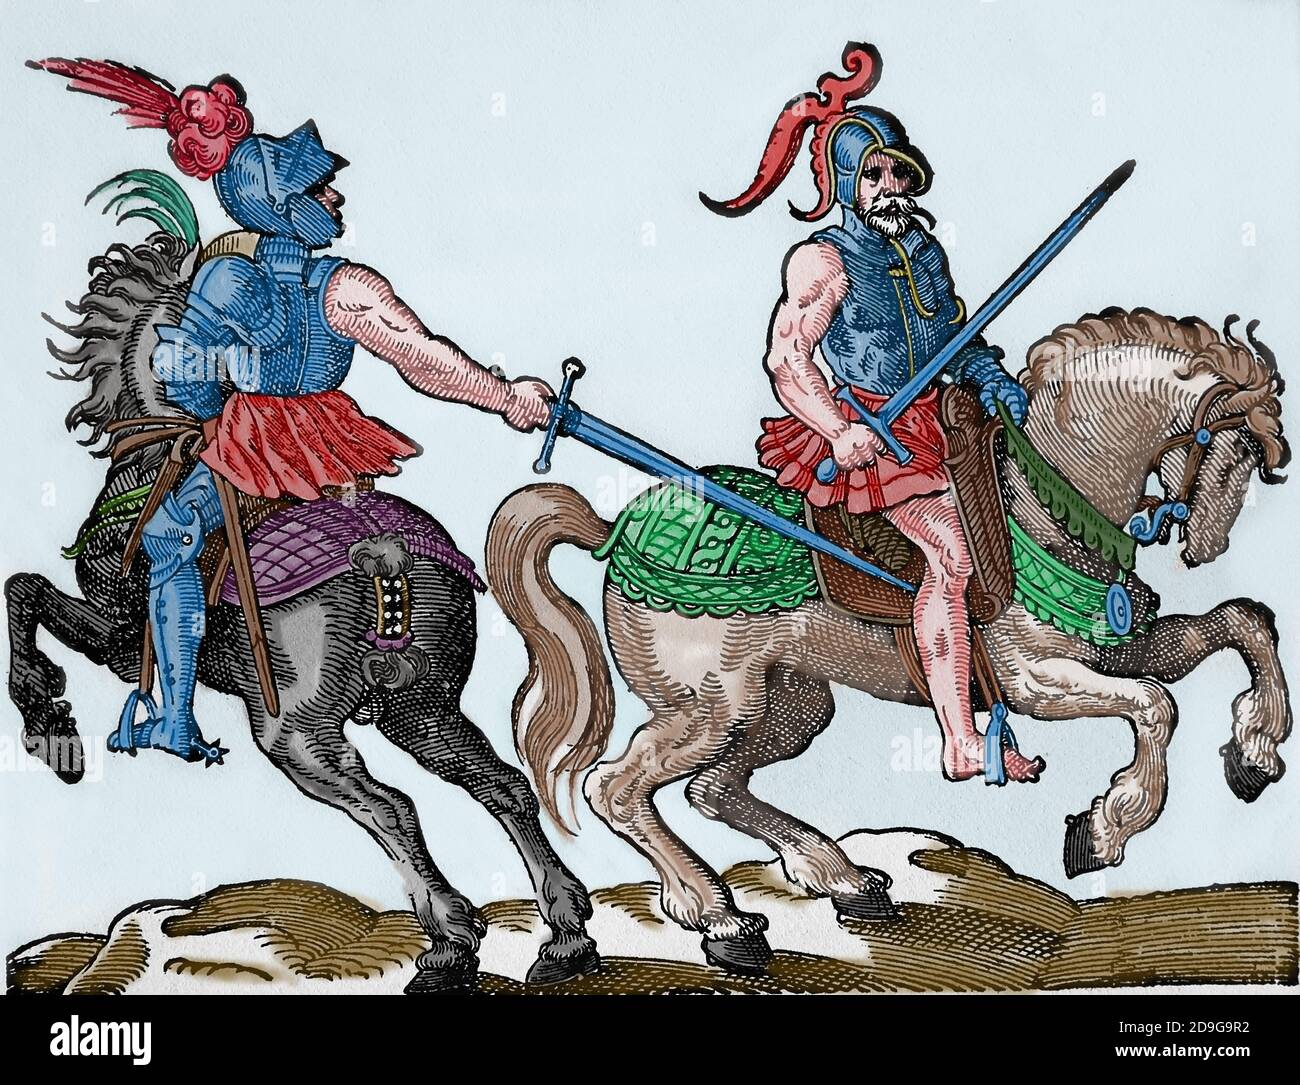 Renaissance-Ära. Pferdekampf mit Schwertern. Stich von Jost Amman, 16. Jahrhundert. Spätere Färbung. Stockfoto